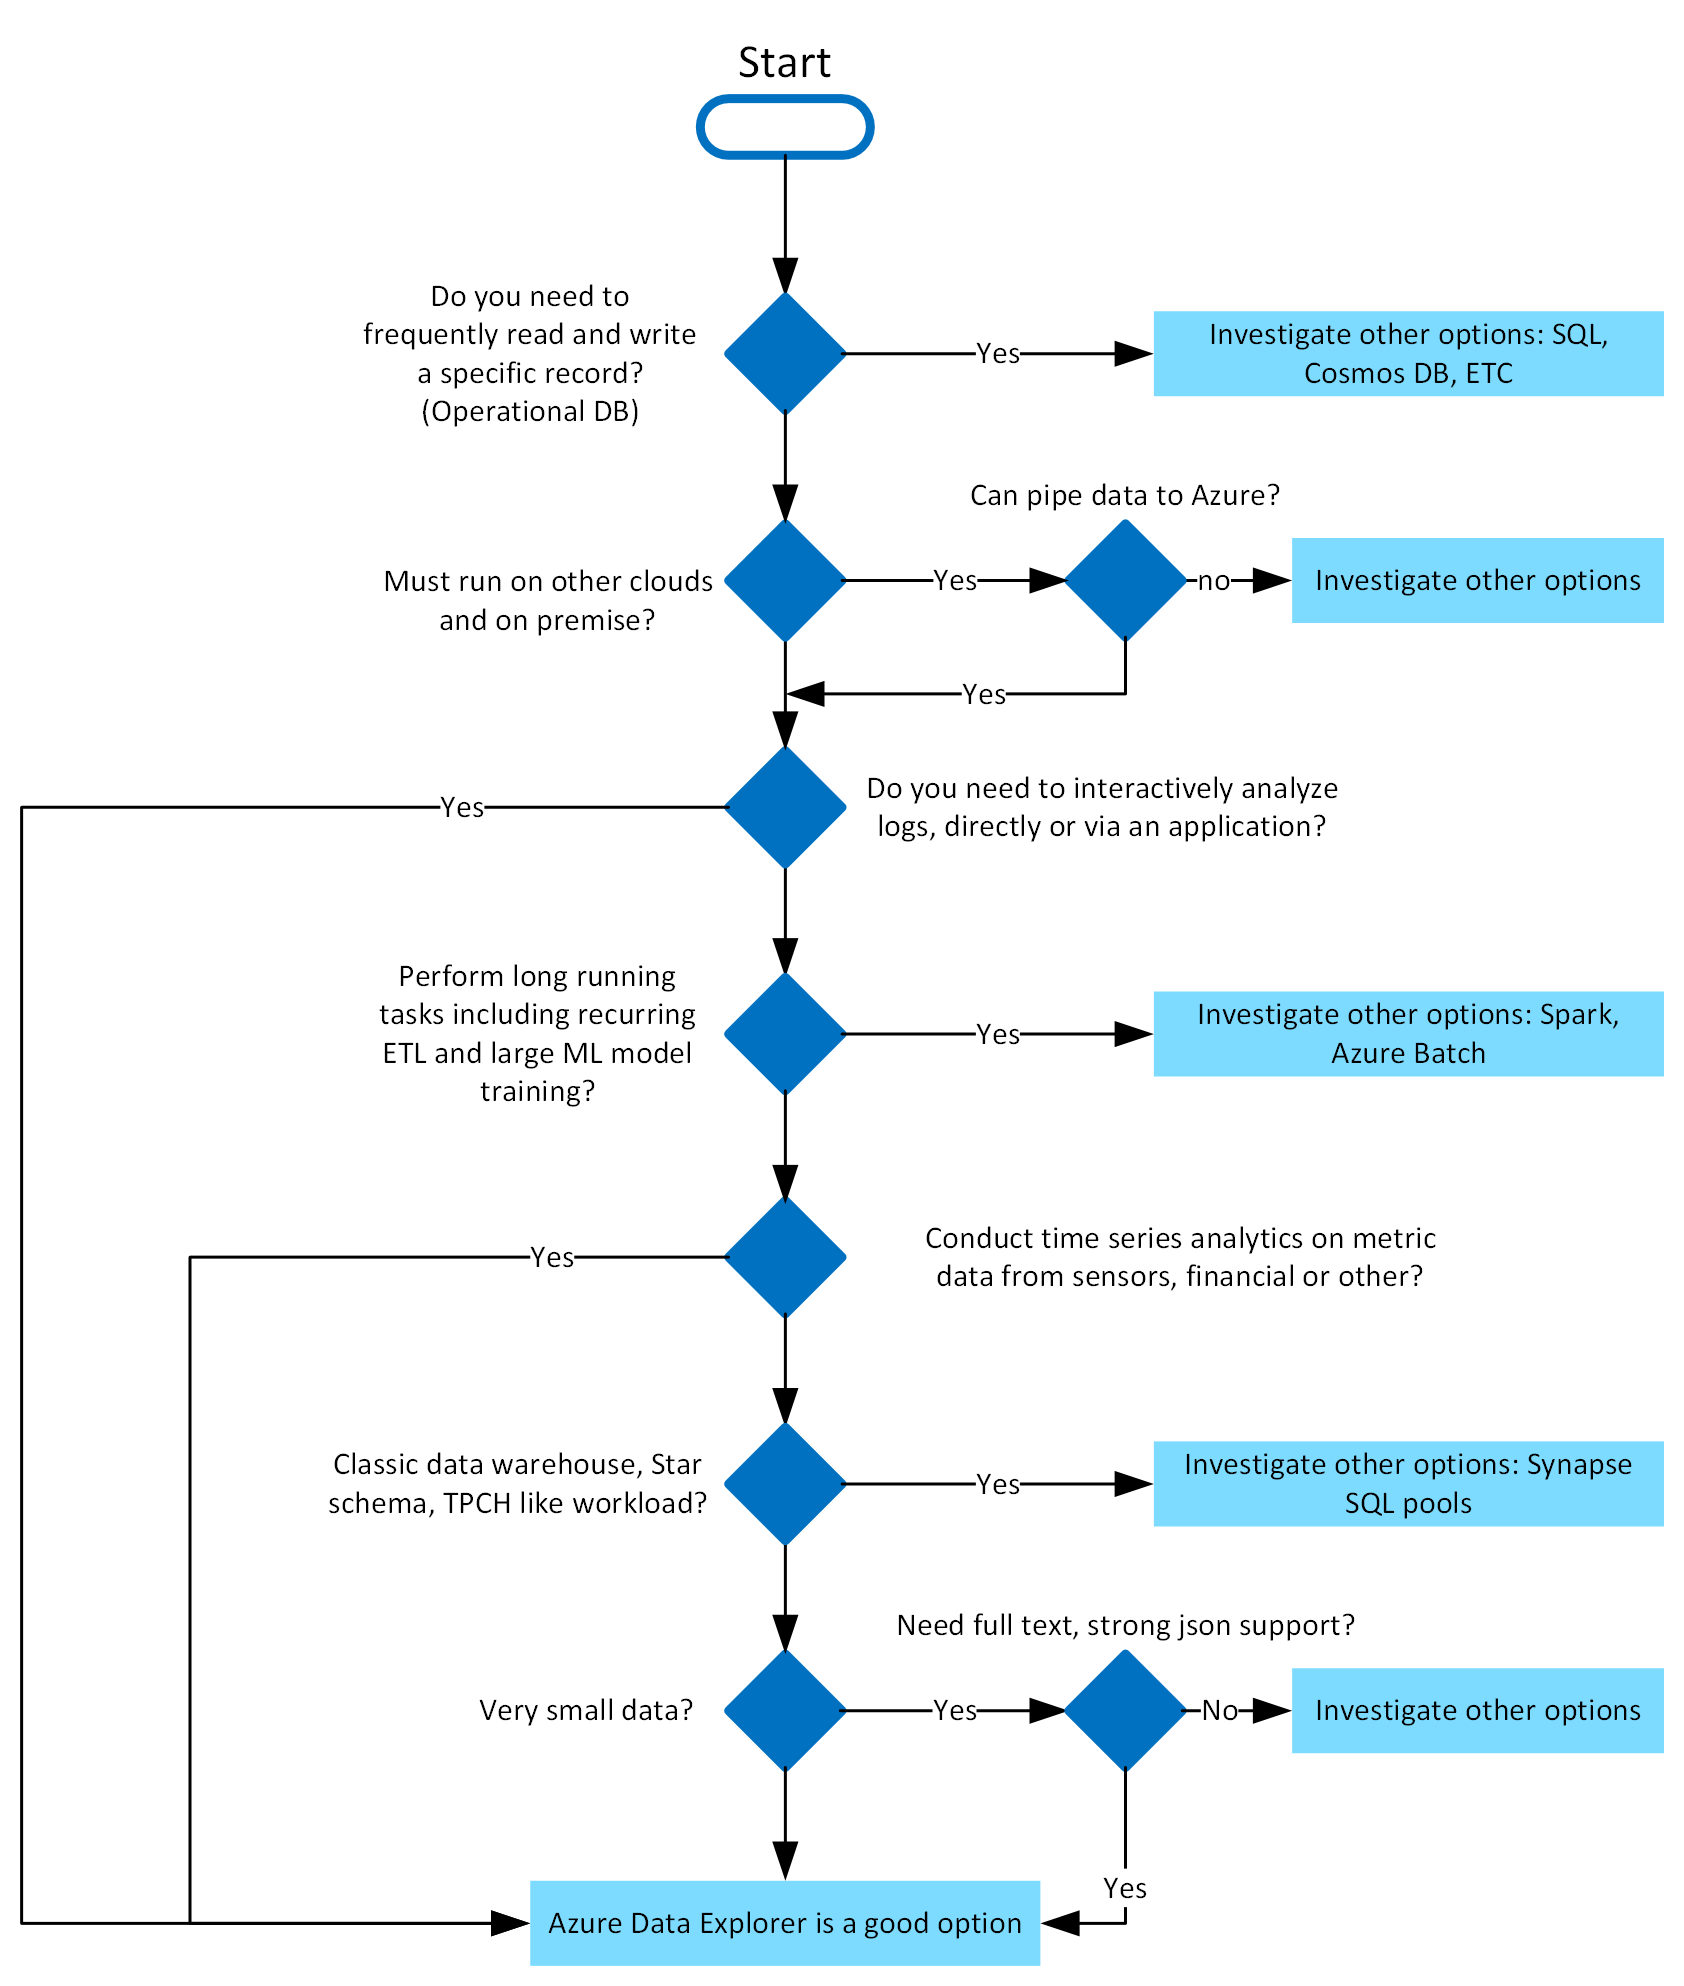 Image schématique du workflow d’un arbre de décision Azure Data Explorer.